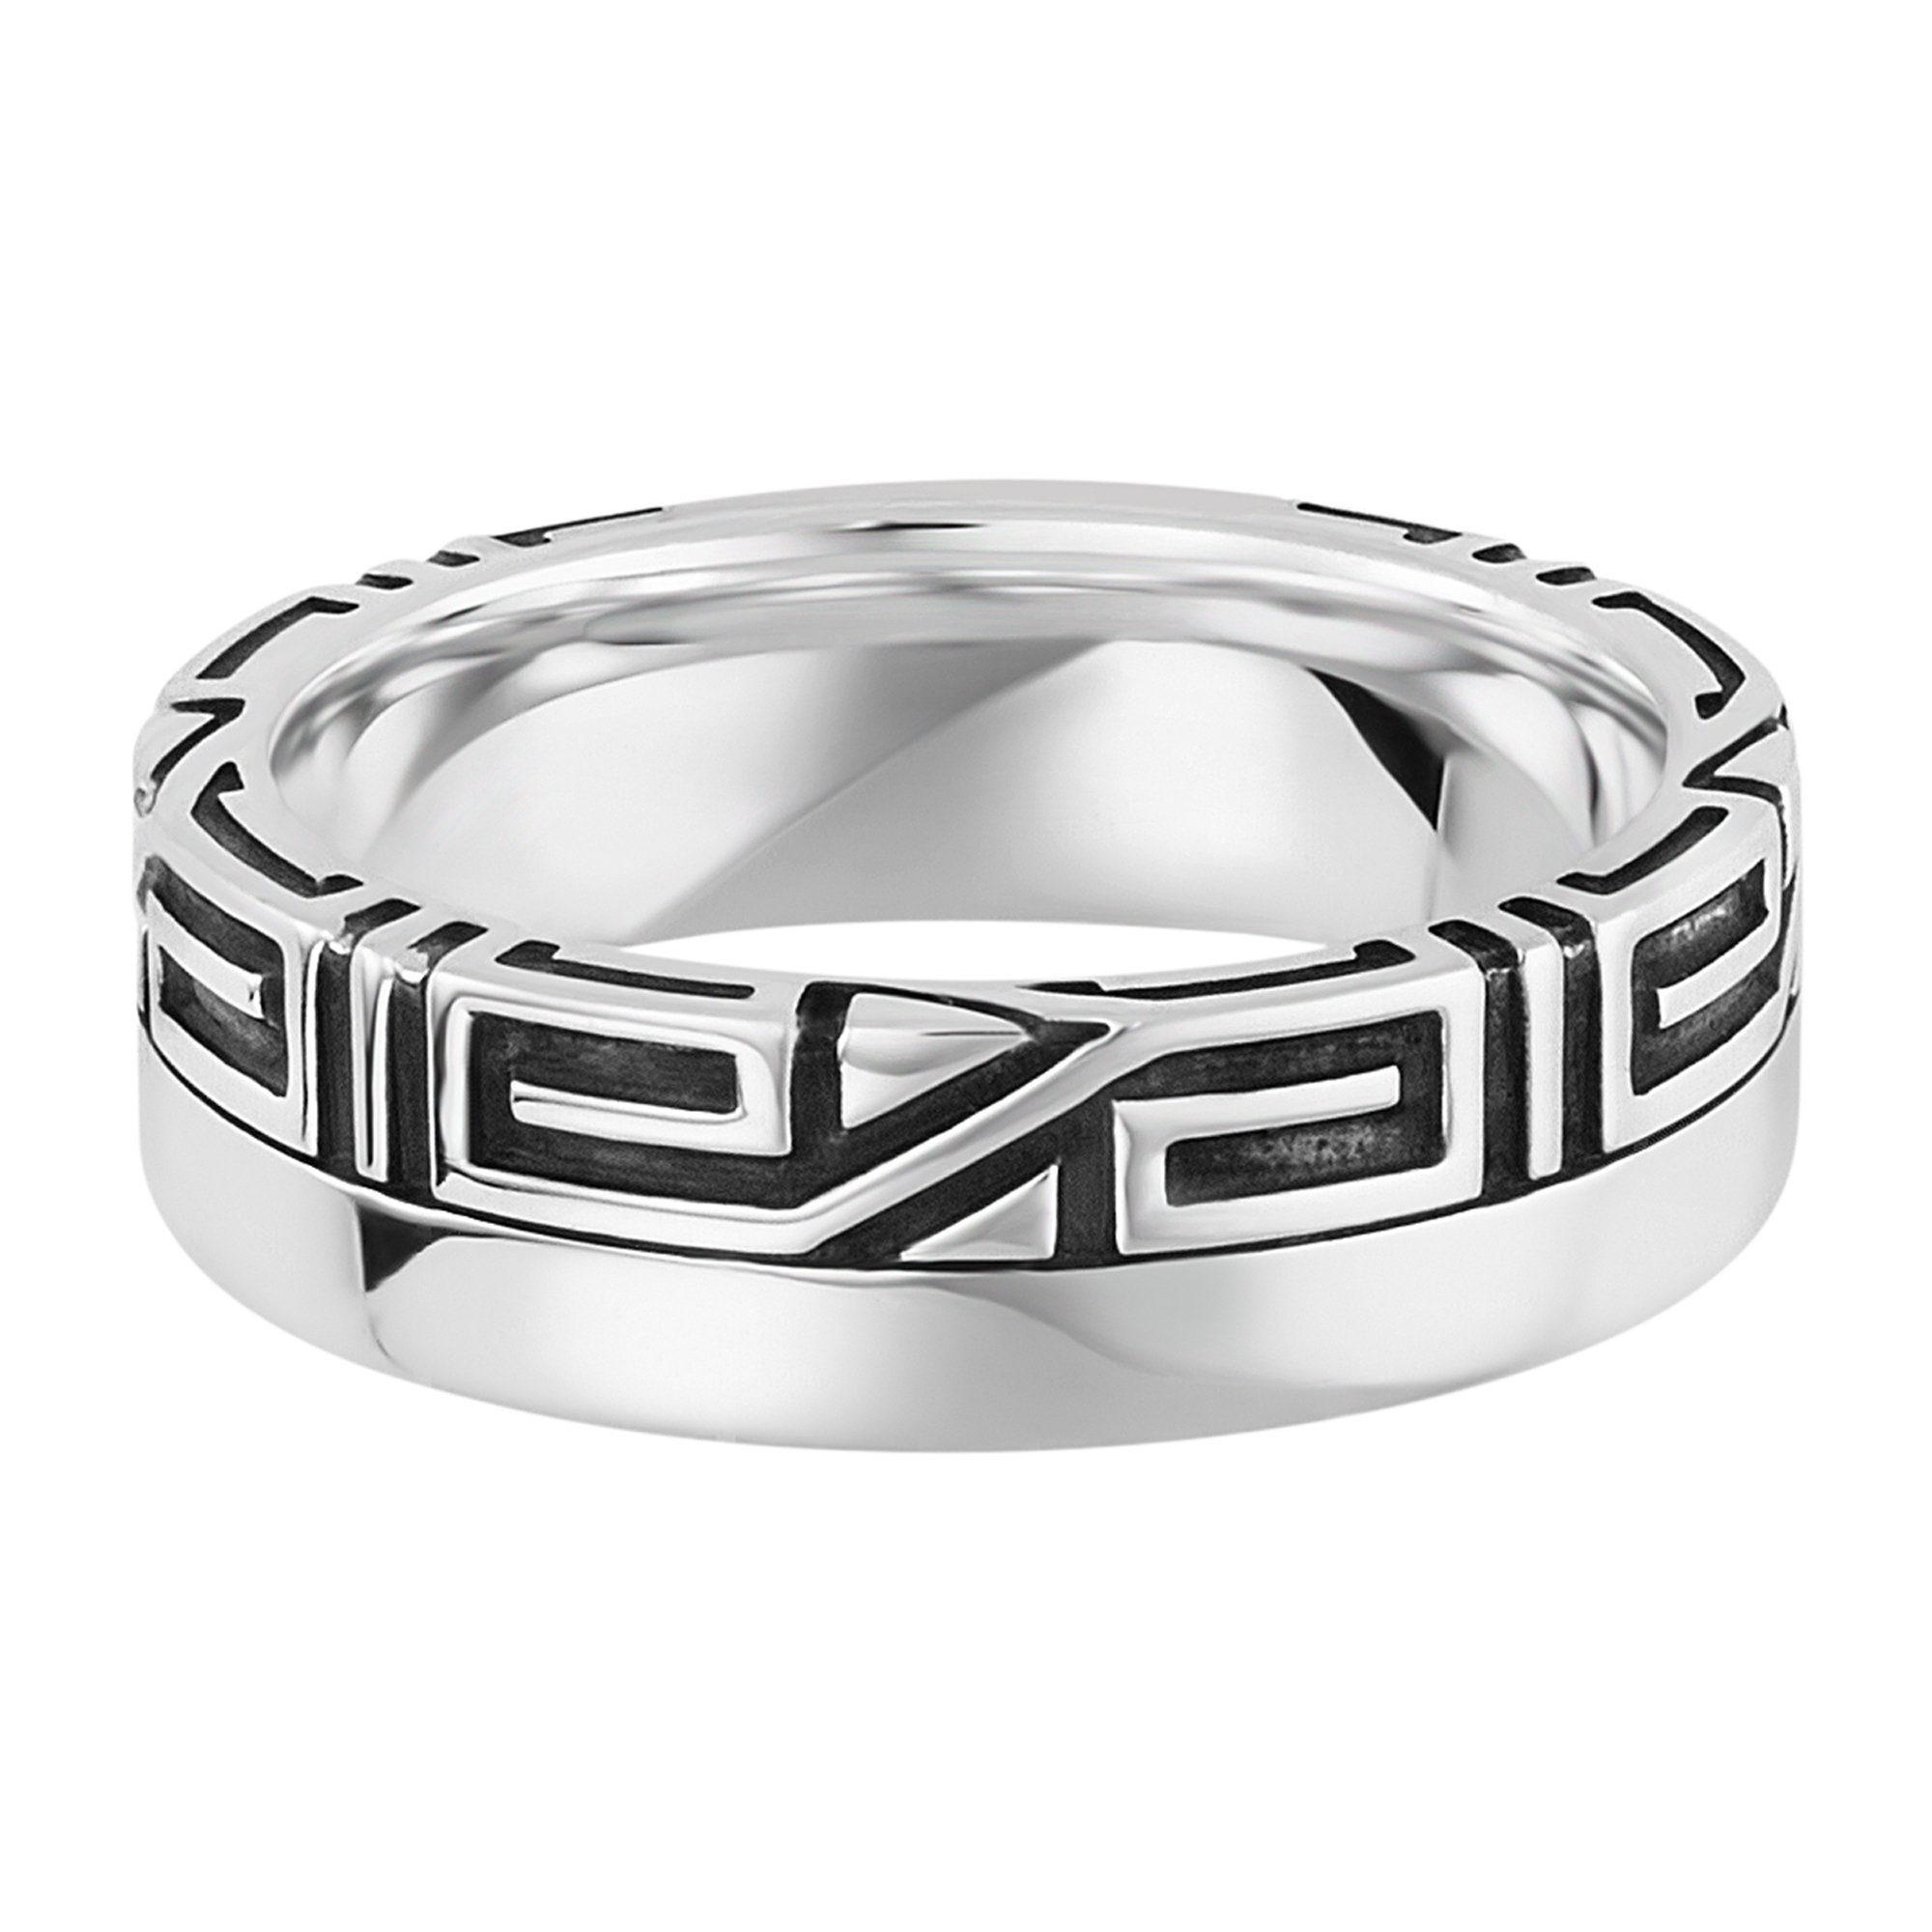 CAÏ Fingerring 925/- Sterling Silber rhodiniert Ornament, Verspieltes und  modernes Design